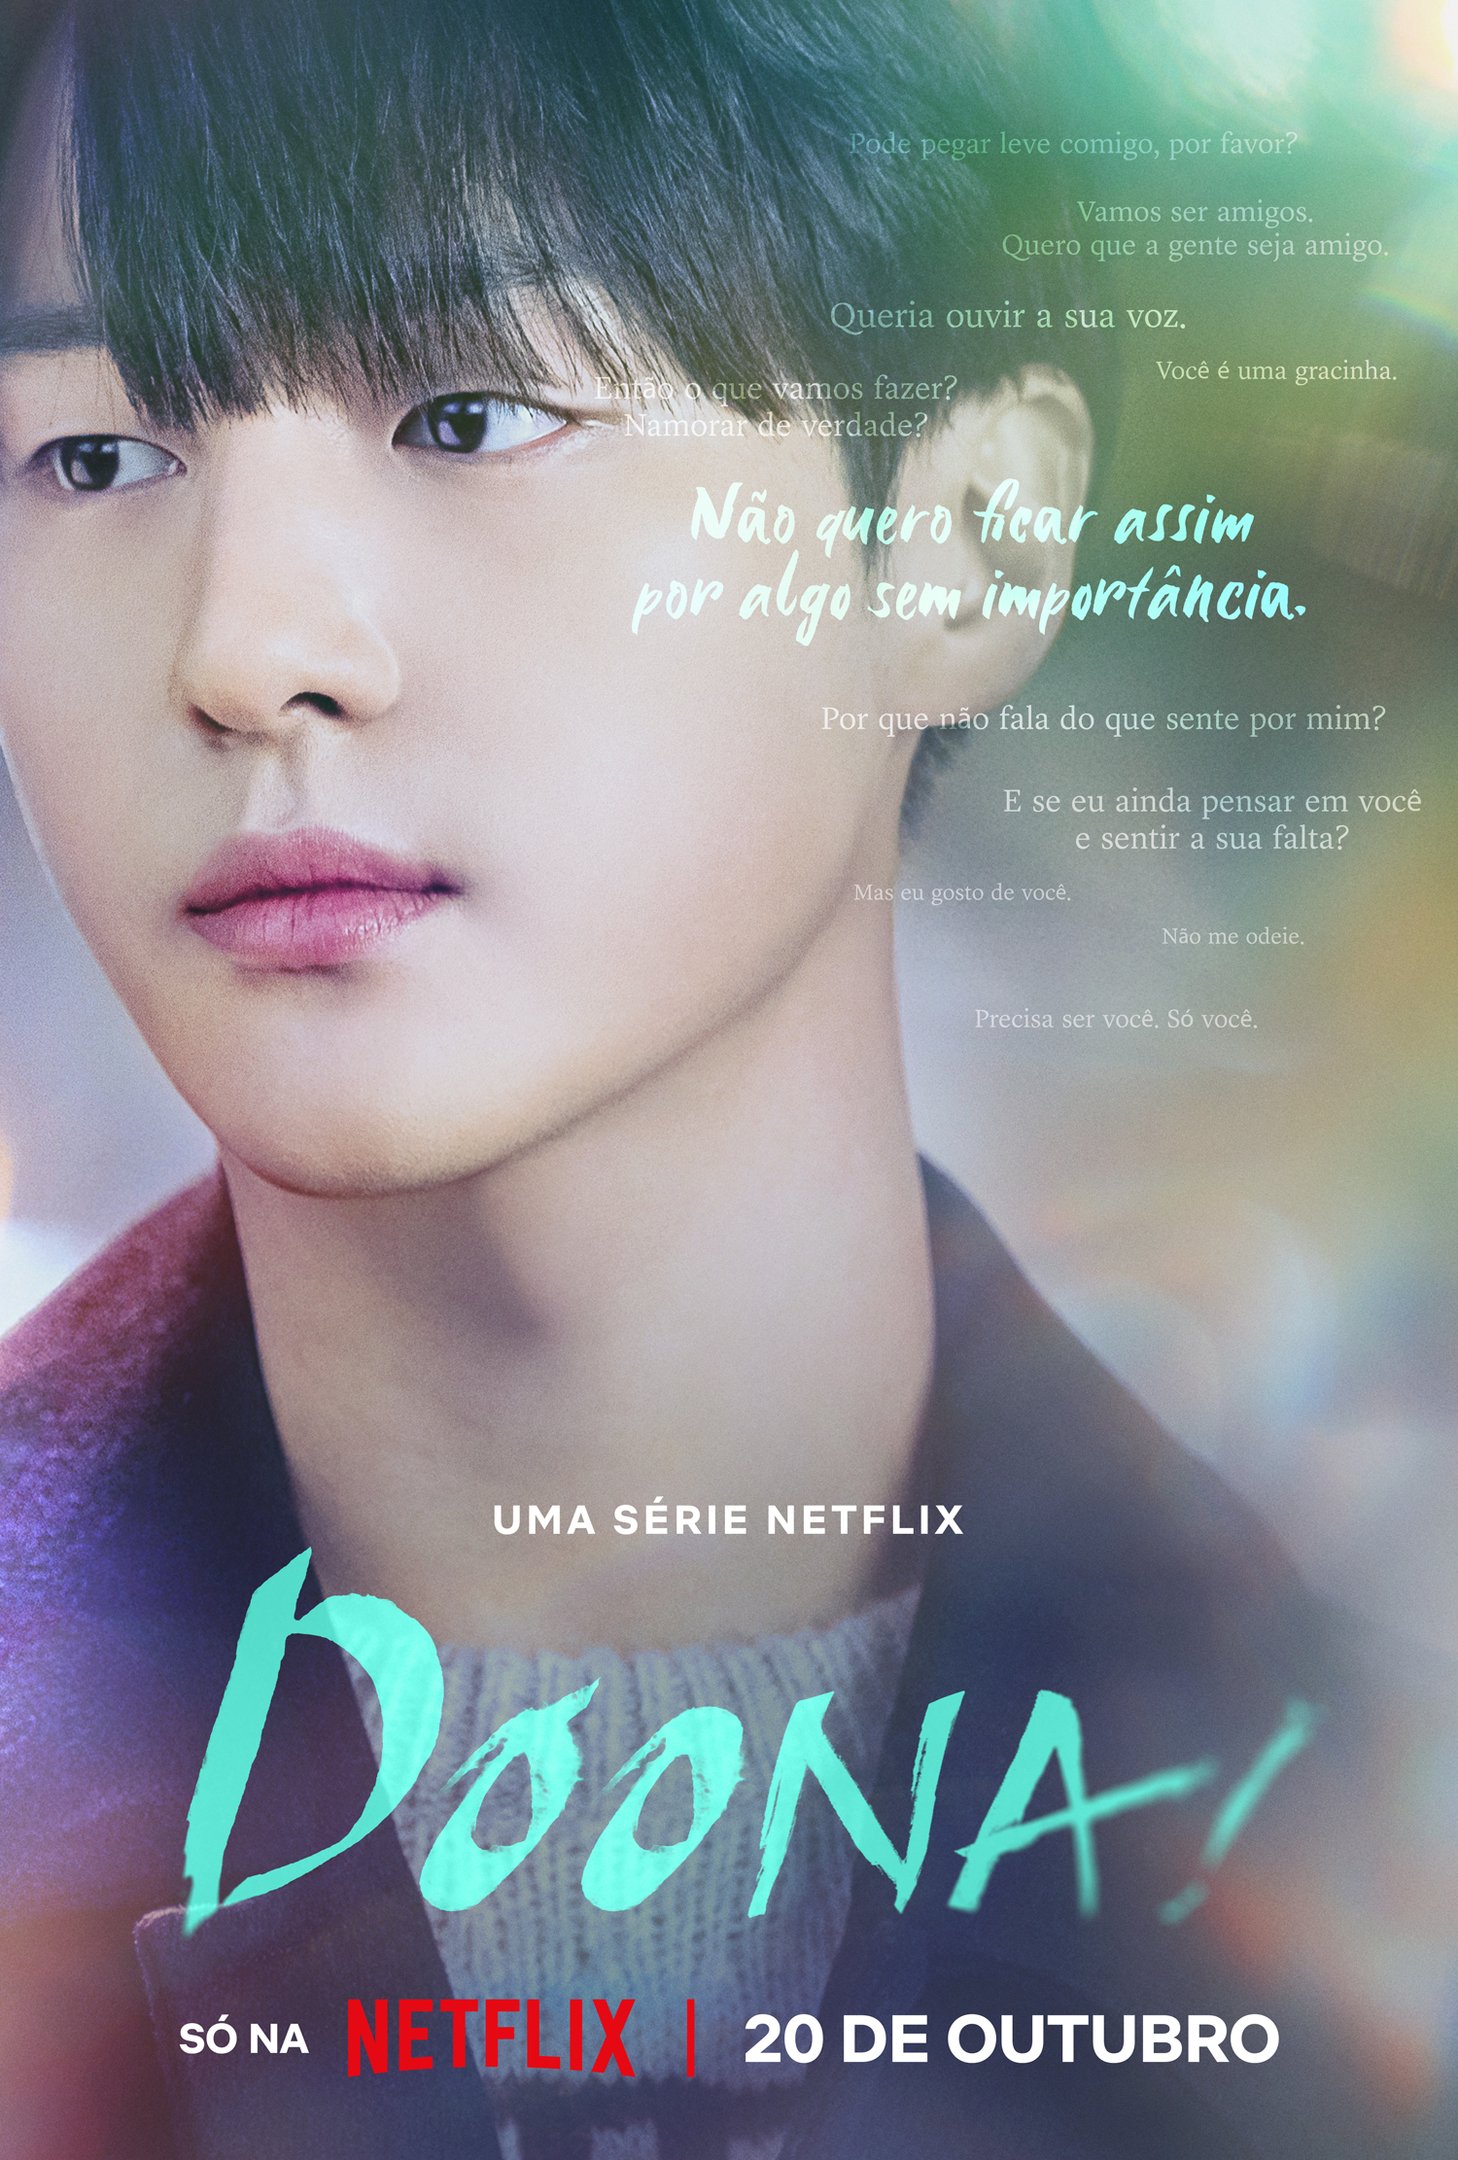 Doona!: conheça sinopse, elenco e trailer do novo K-drama da Netflix